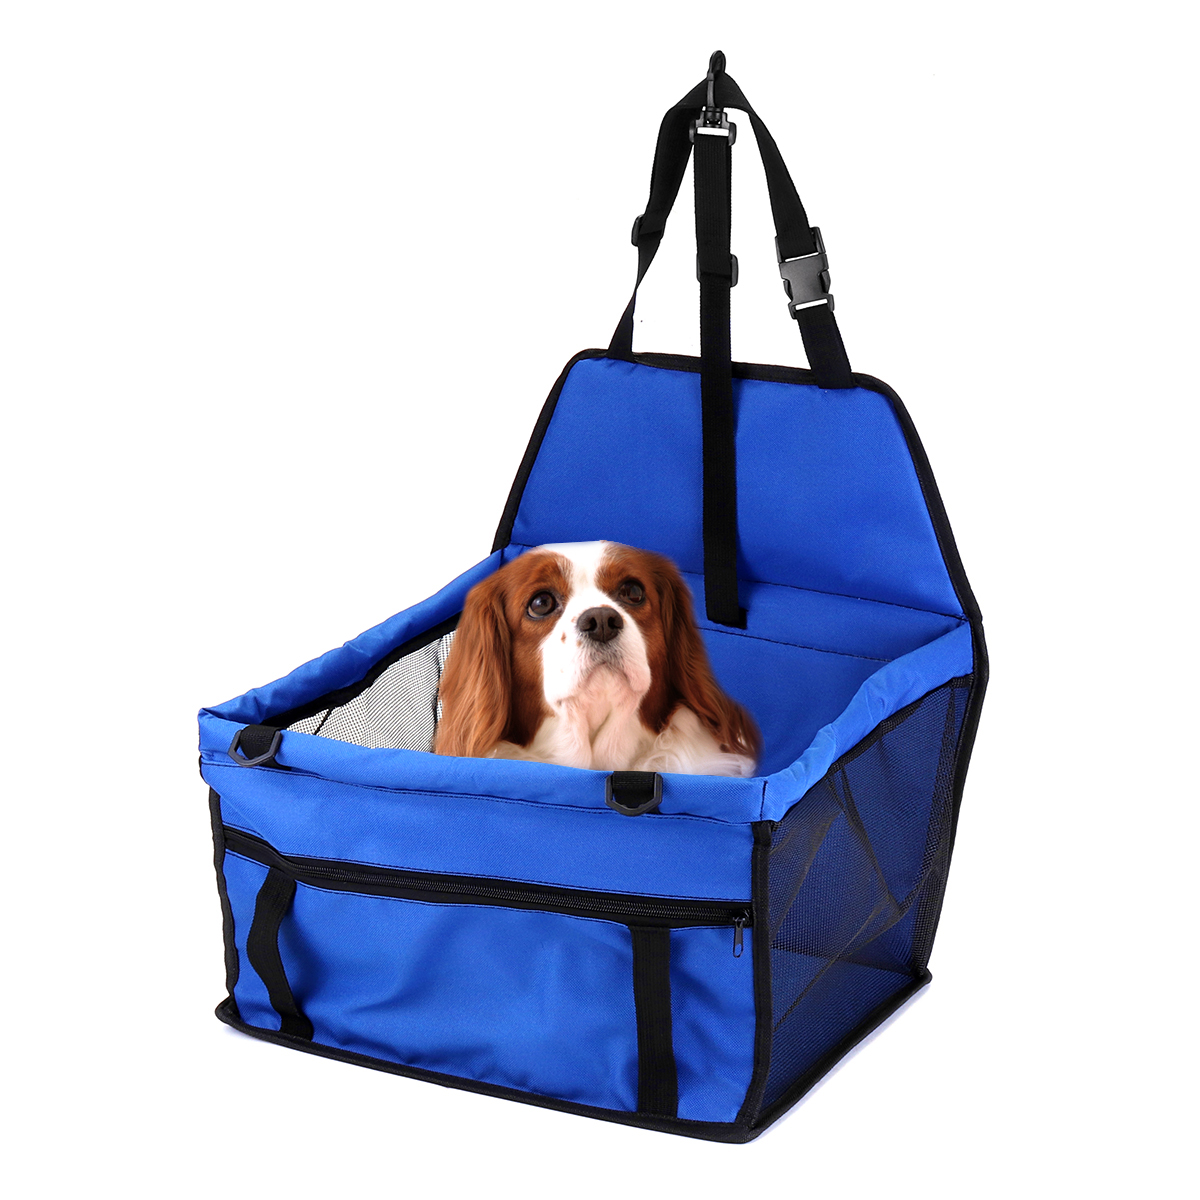 

600D Оксфорд Собака Авто Сиденье 45см Крышка бустера Водонепроницаемы Коврик для домашних животных Автоrier Портативная сумка для путешест